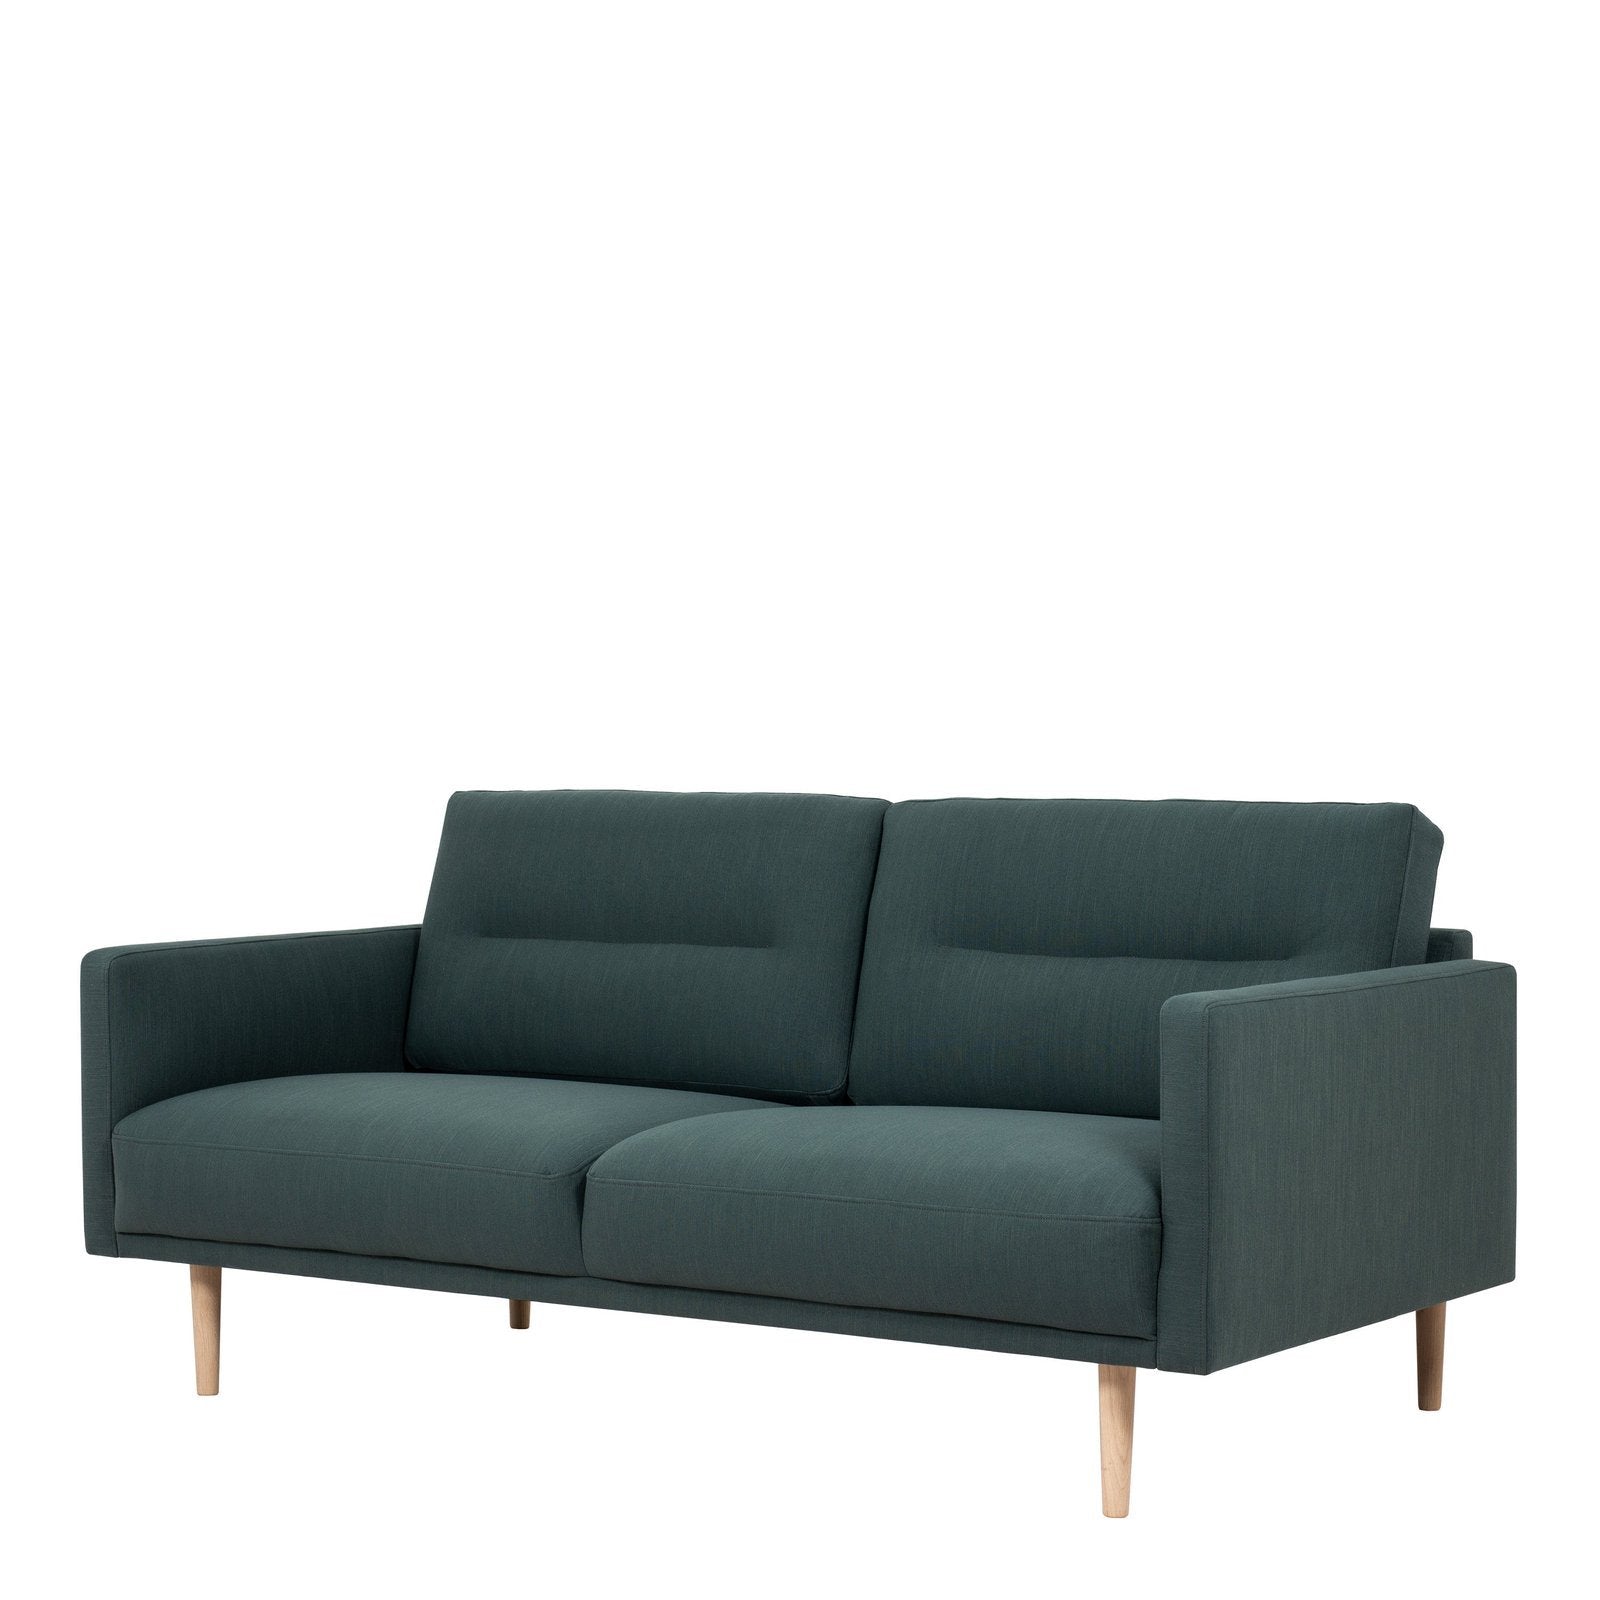 Larvik 2.5 Seater Sofa